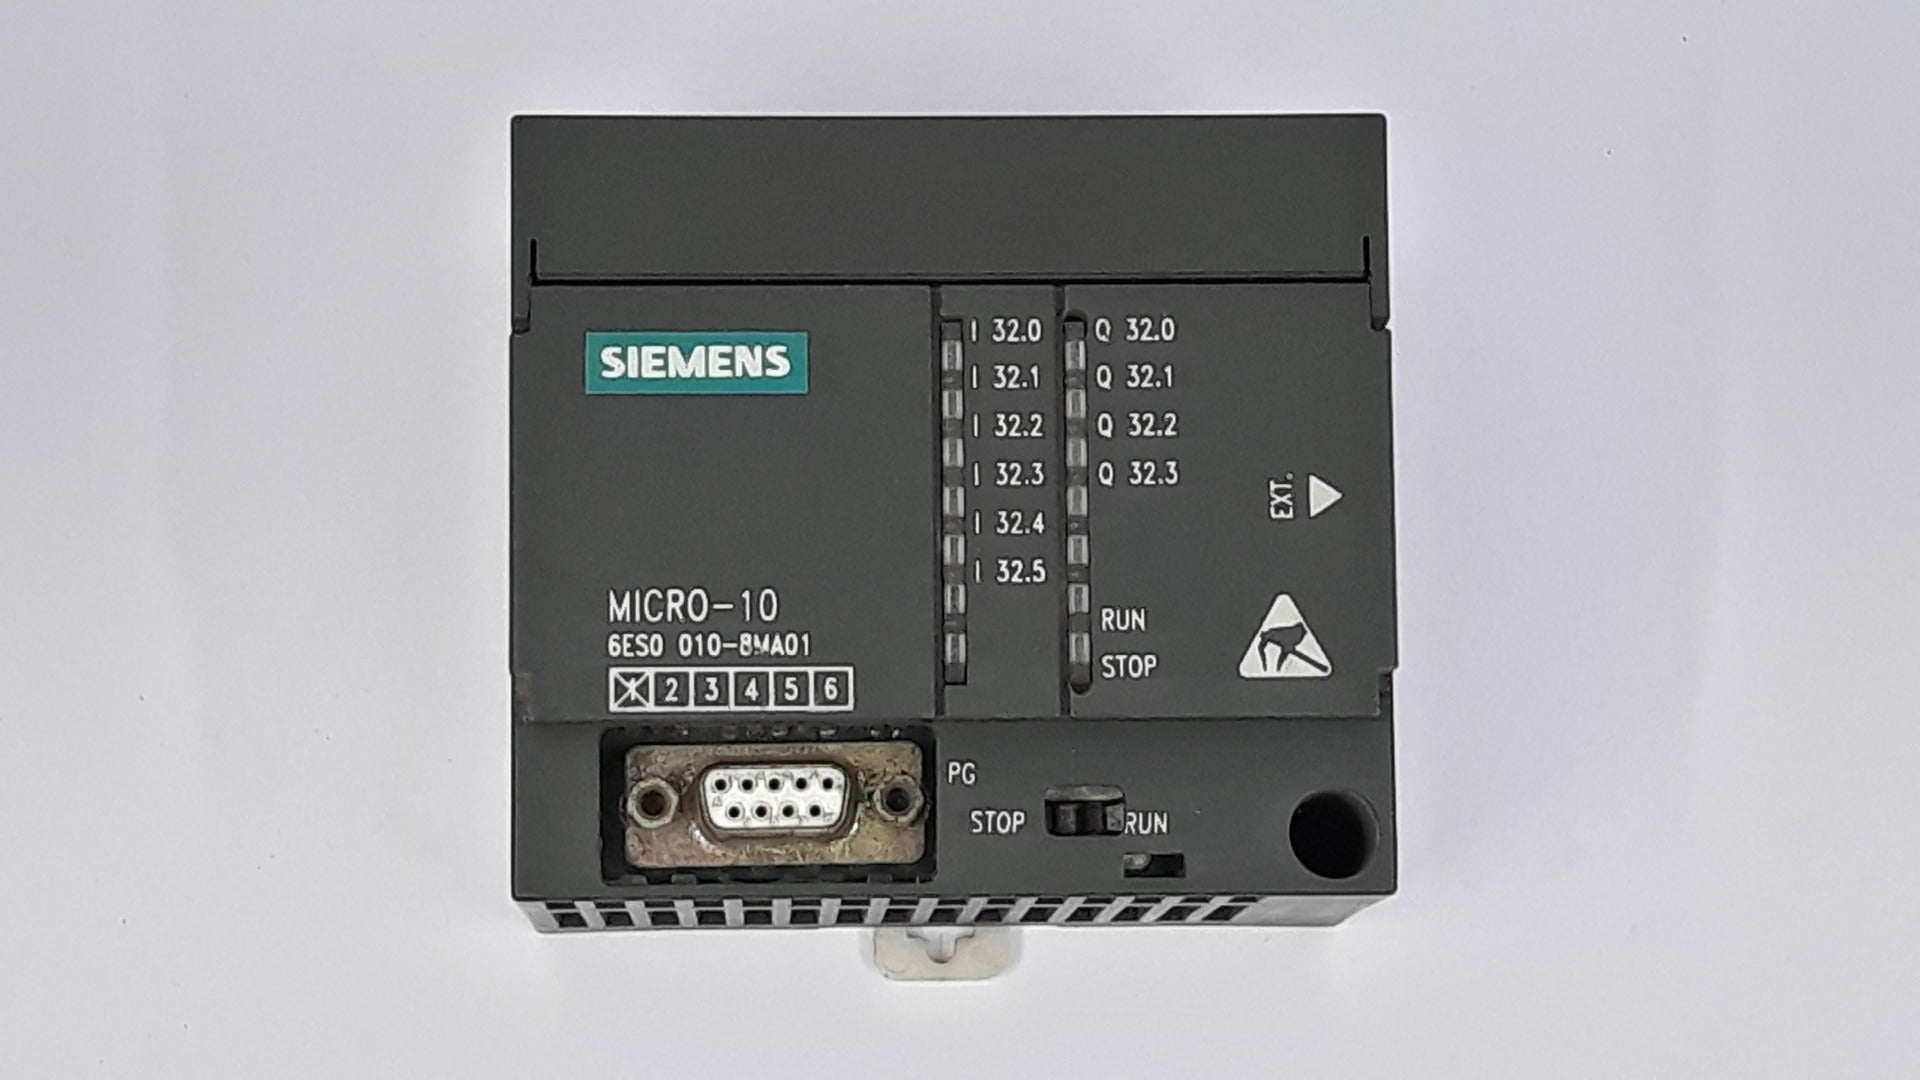 Siemens Micro-10 Cpu Module 6Es0 010-8Ma01